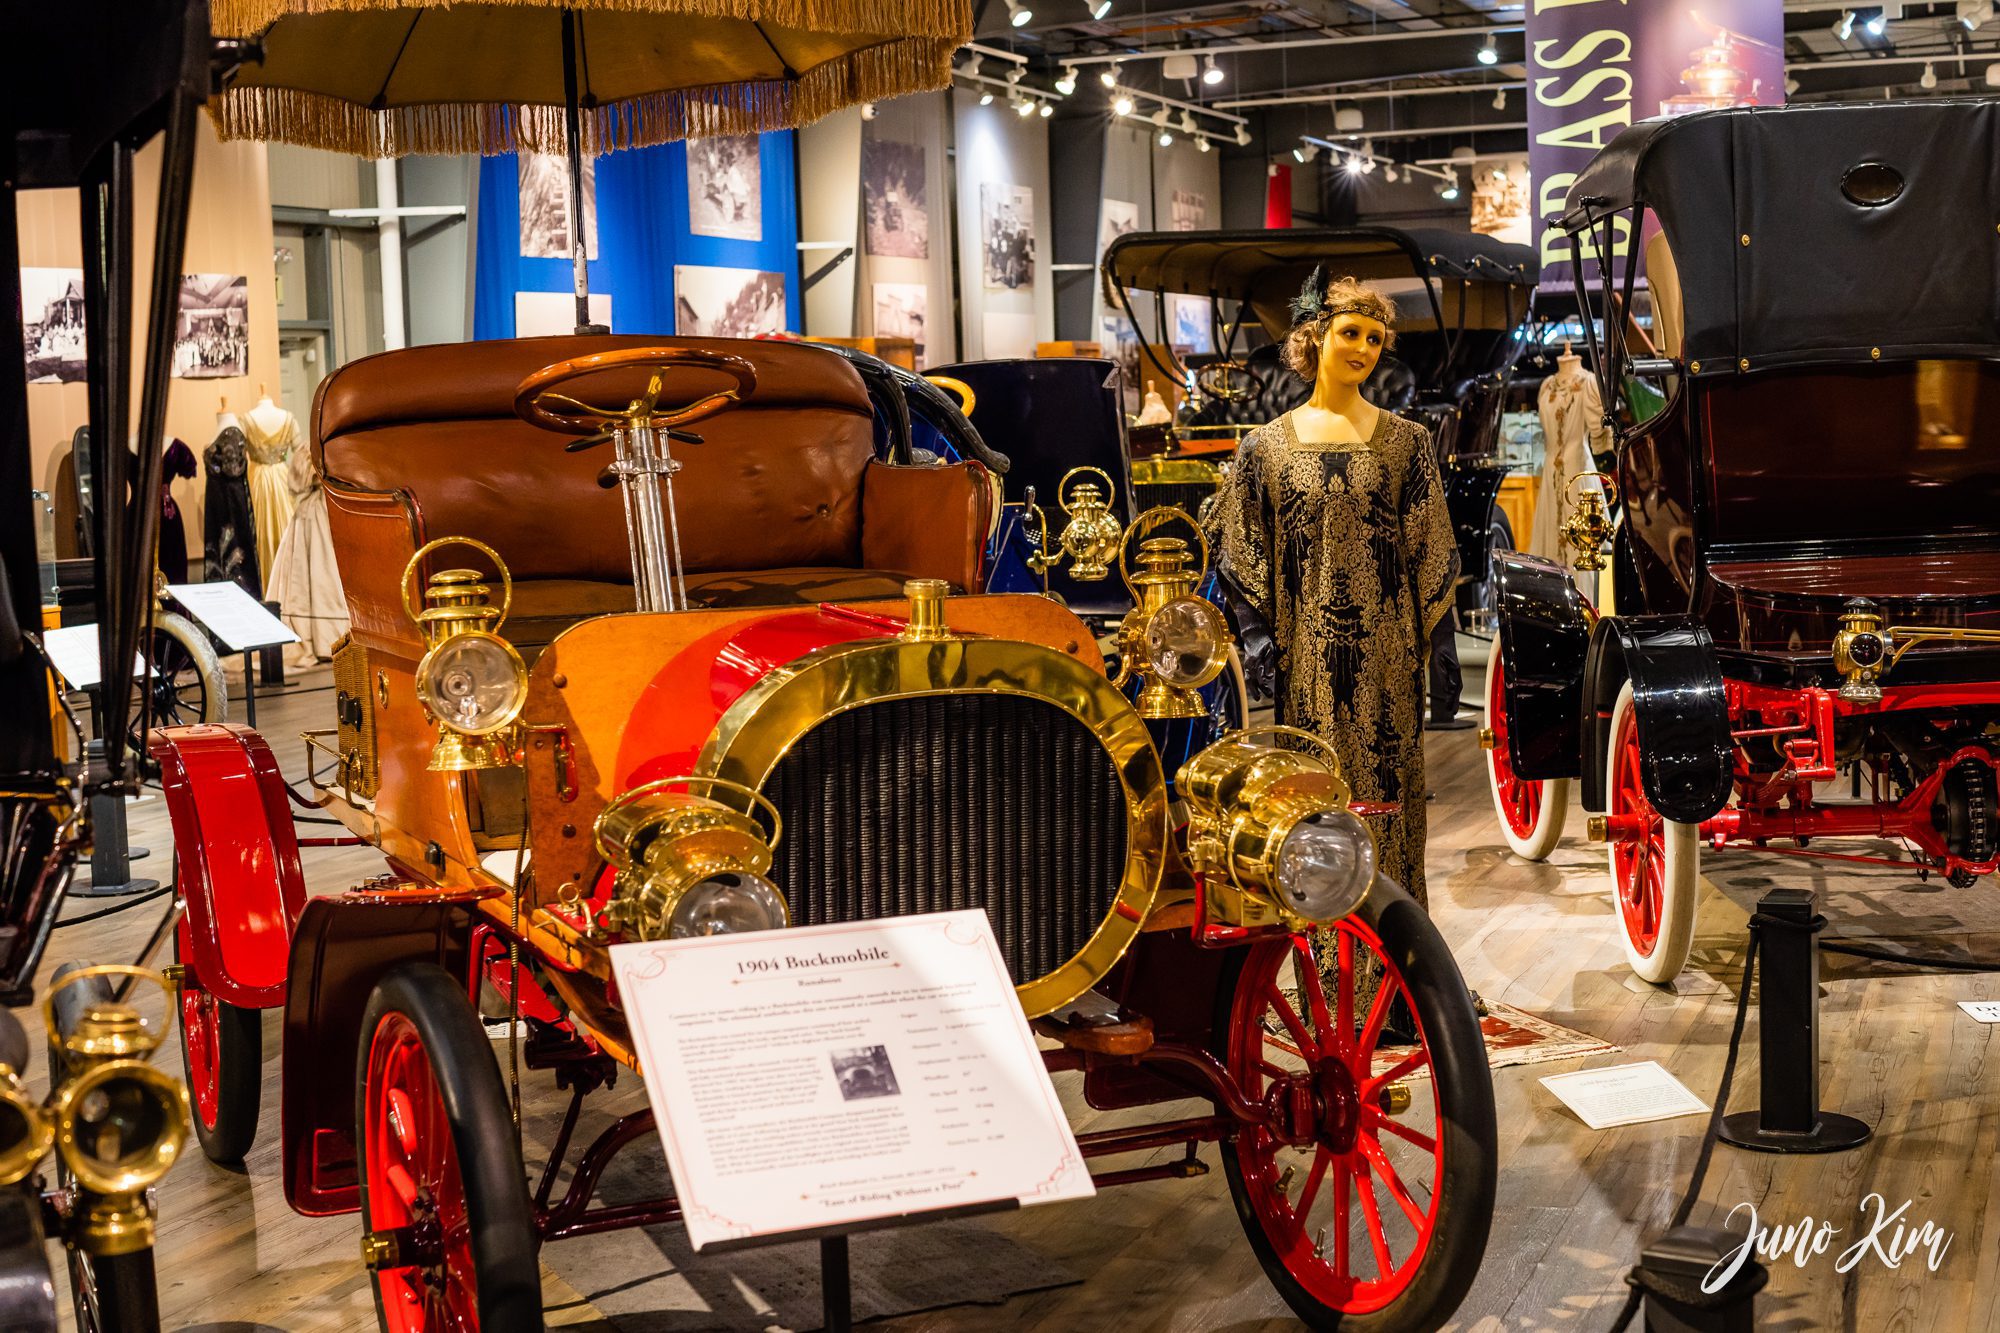 Fountainhead Antique Auto Museum in Fairbanks, Alaska